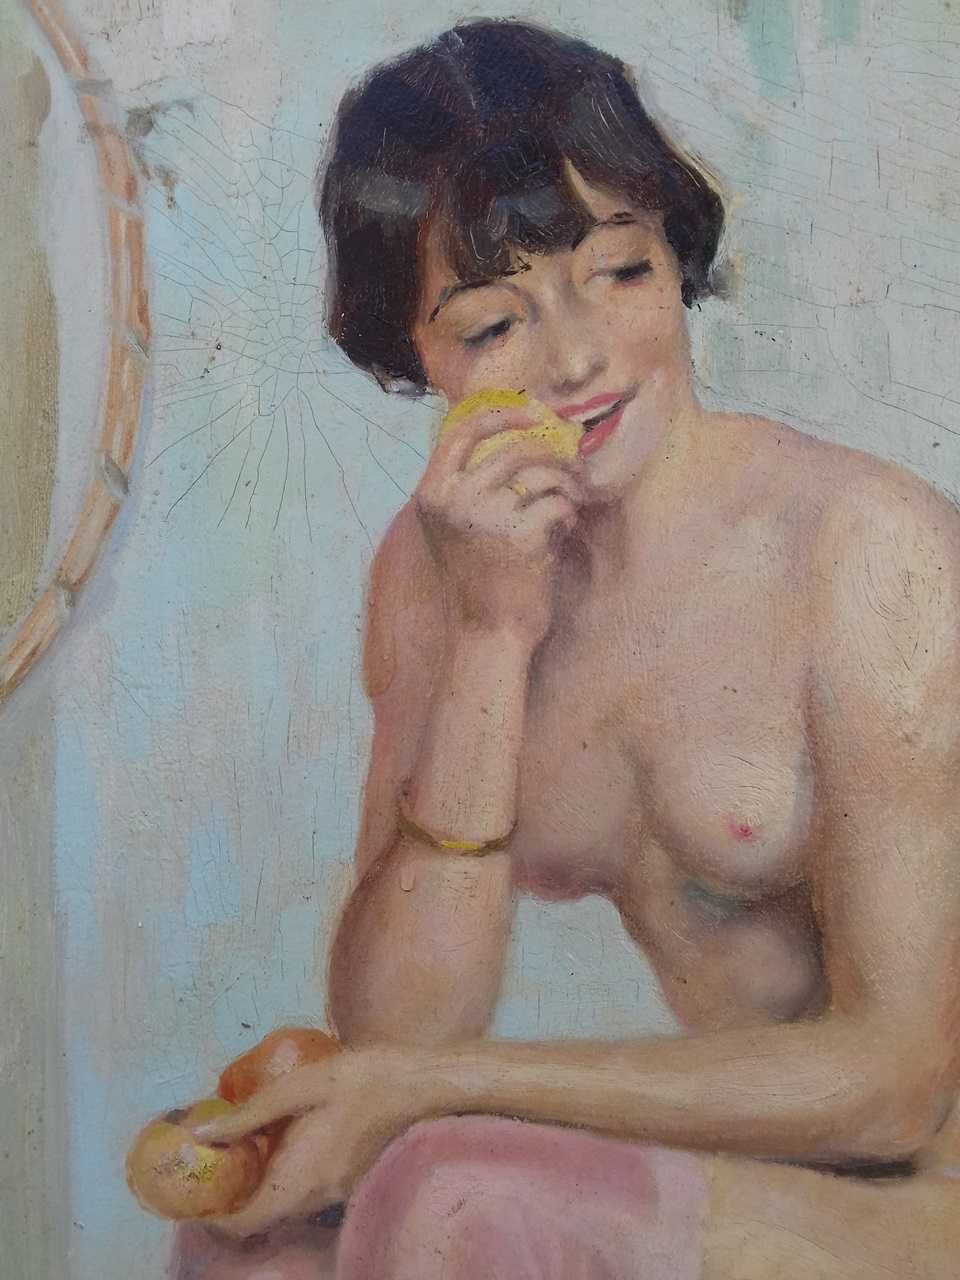 Tablou vechi - nud femeie - semnat C. Somov 1930